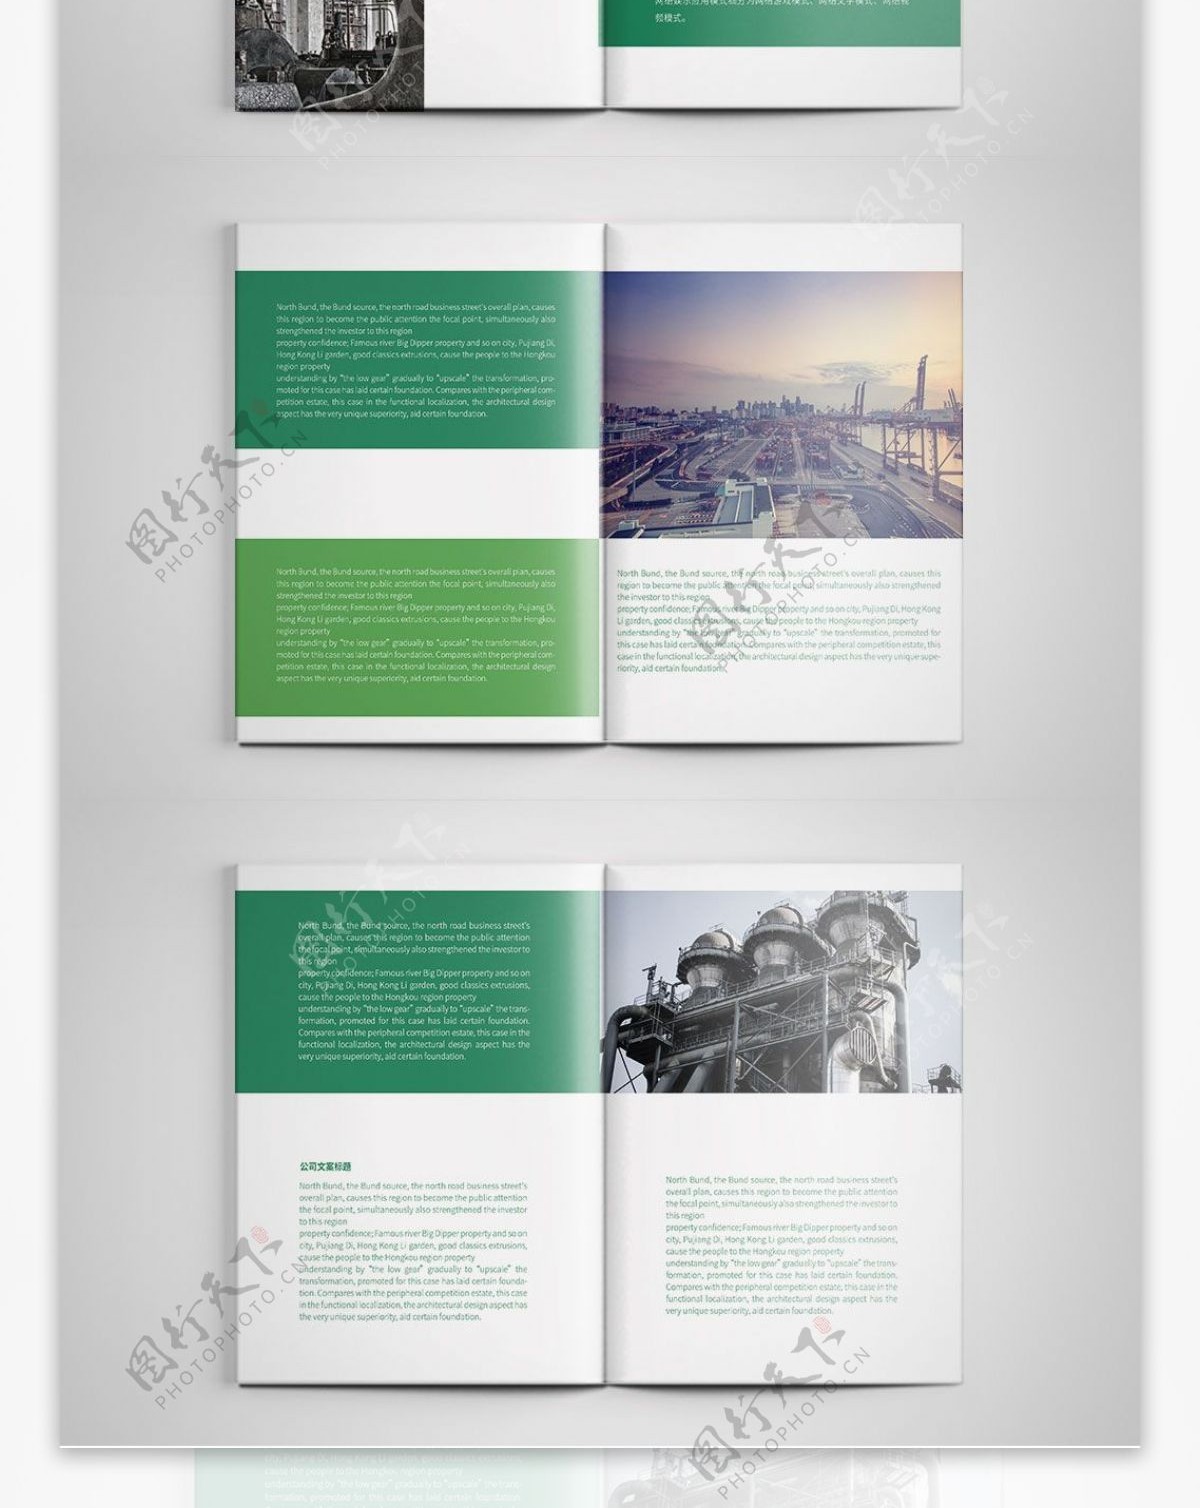 清新绿色工业宣传画册设计PSD模板